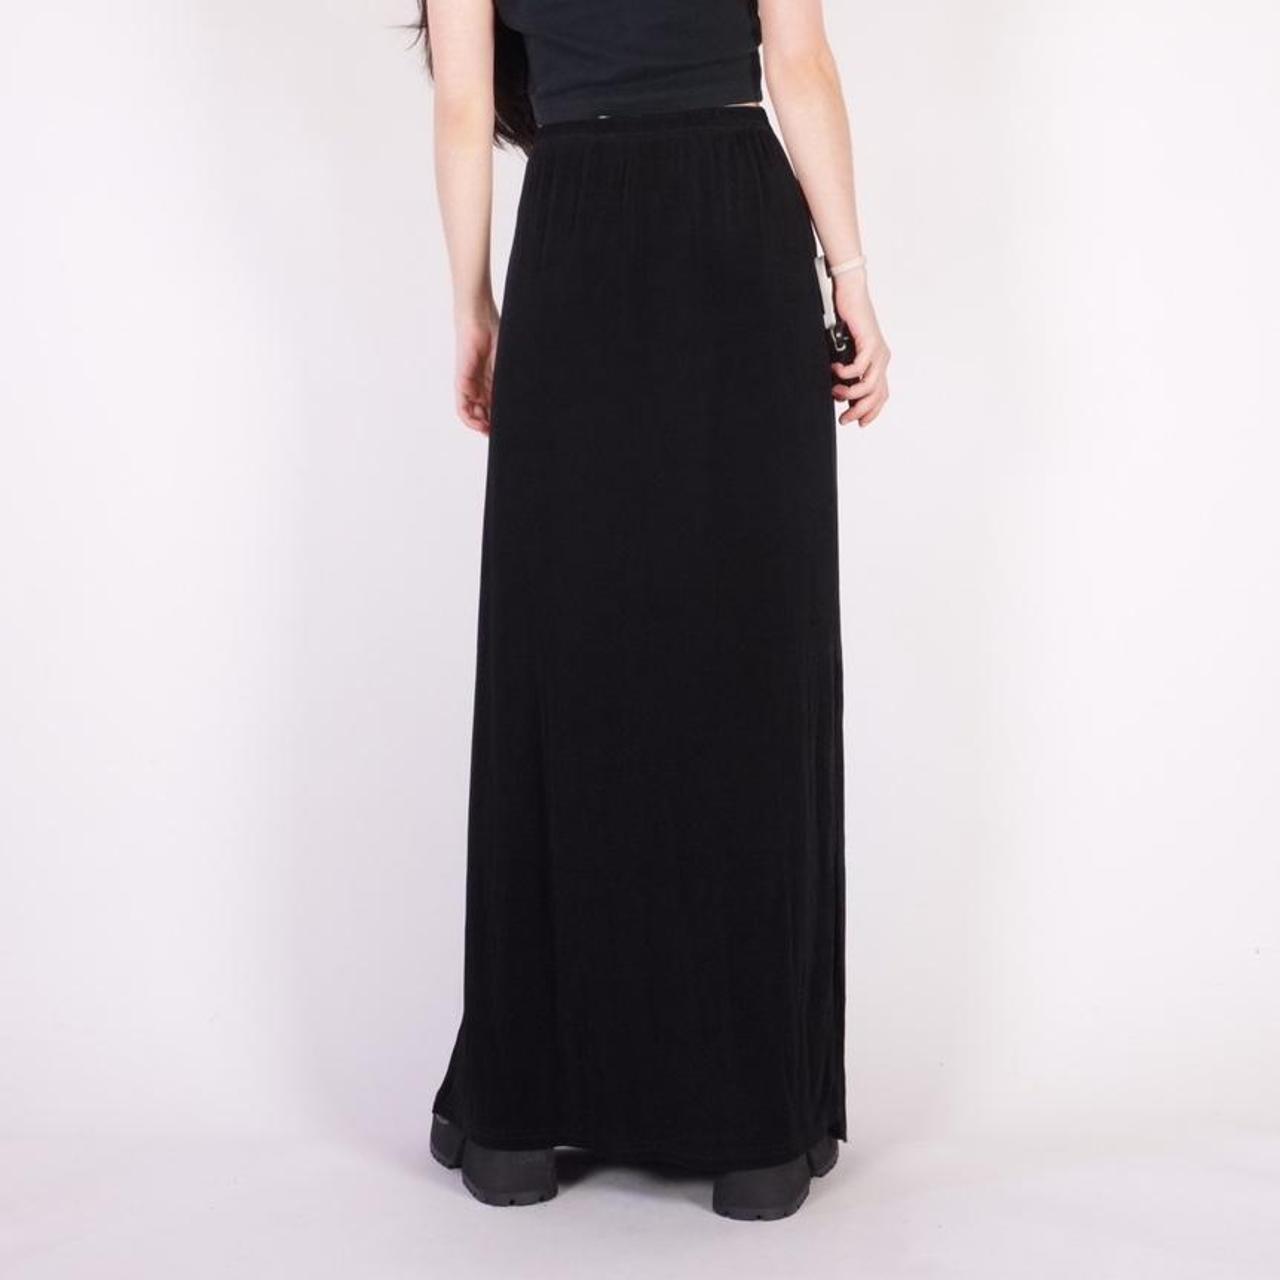 90s slinky black maxi skirt w/ stretch waist Brand:... - Depop